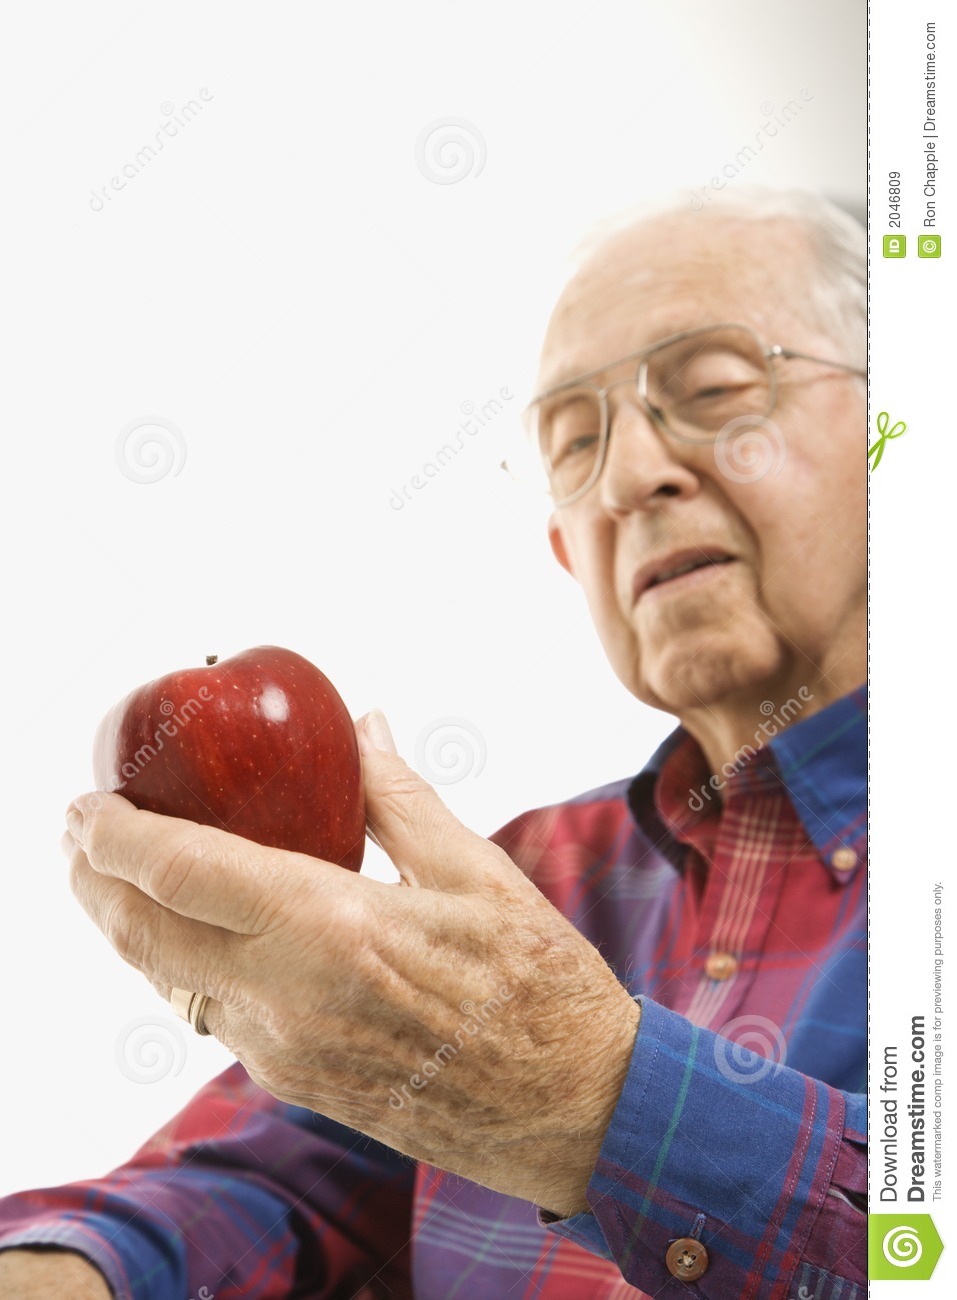 elderly-man-holding-apple-2046809.jpg